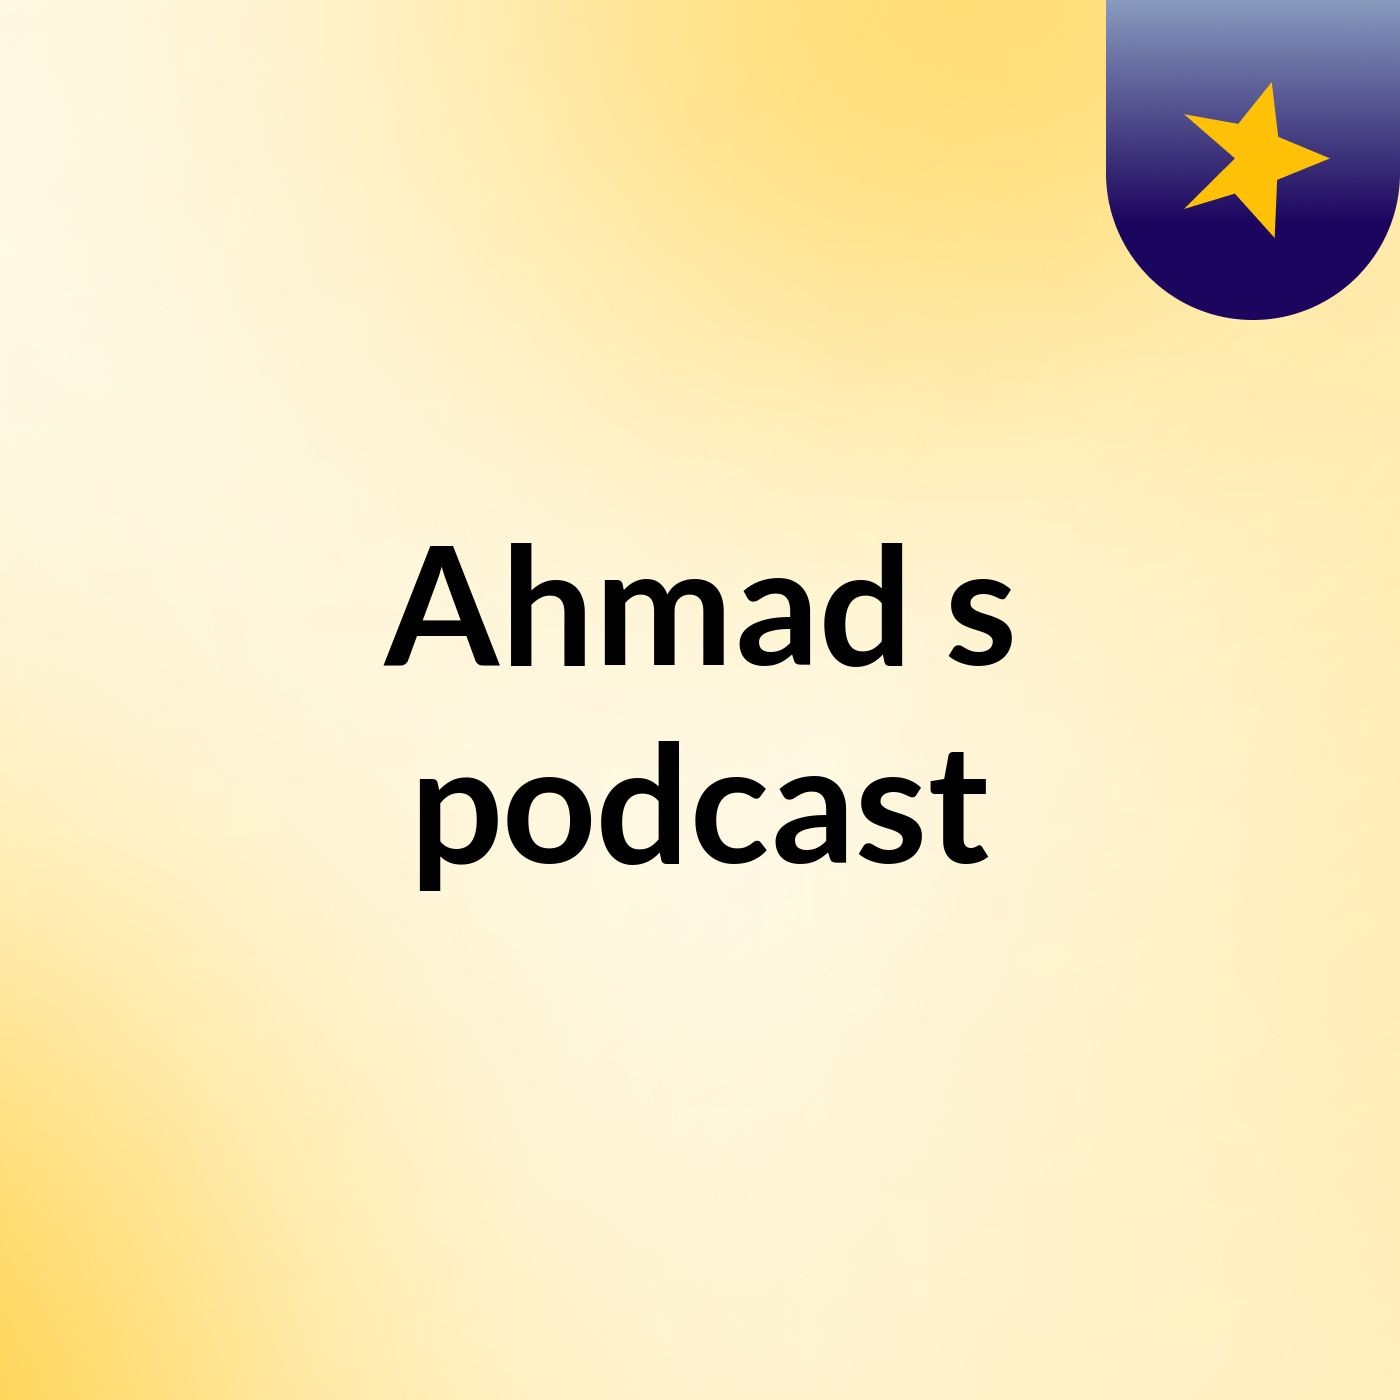 Ahmad's podcast